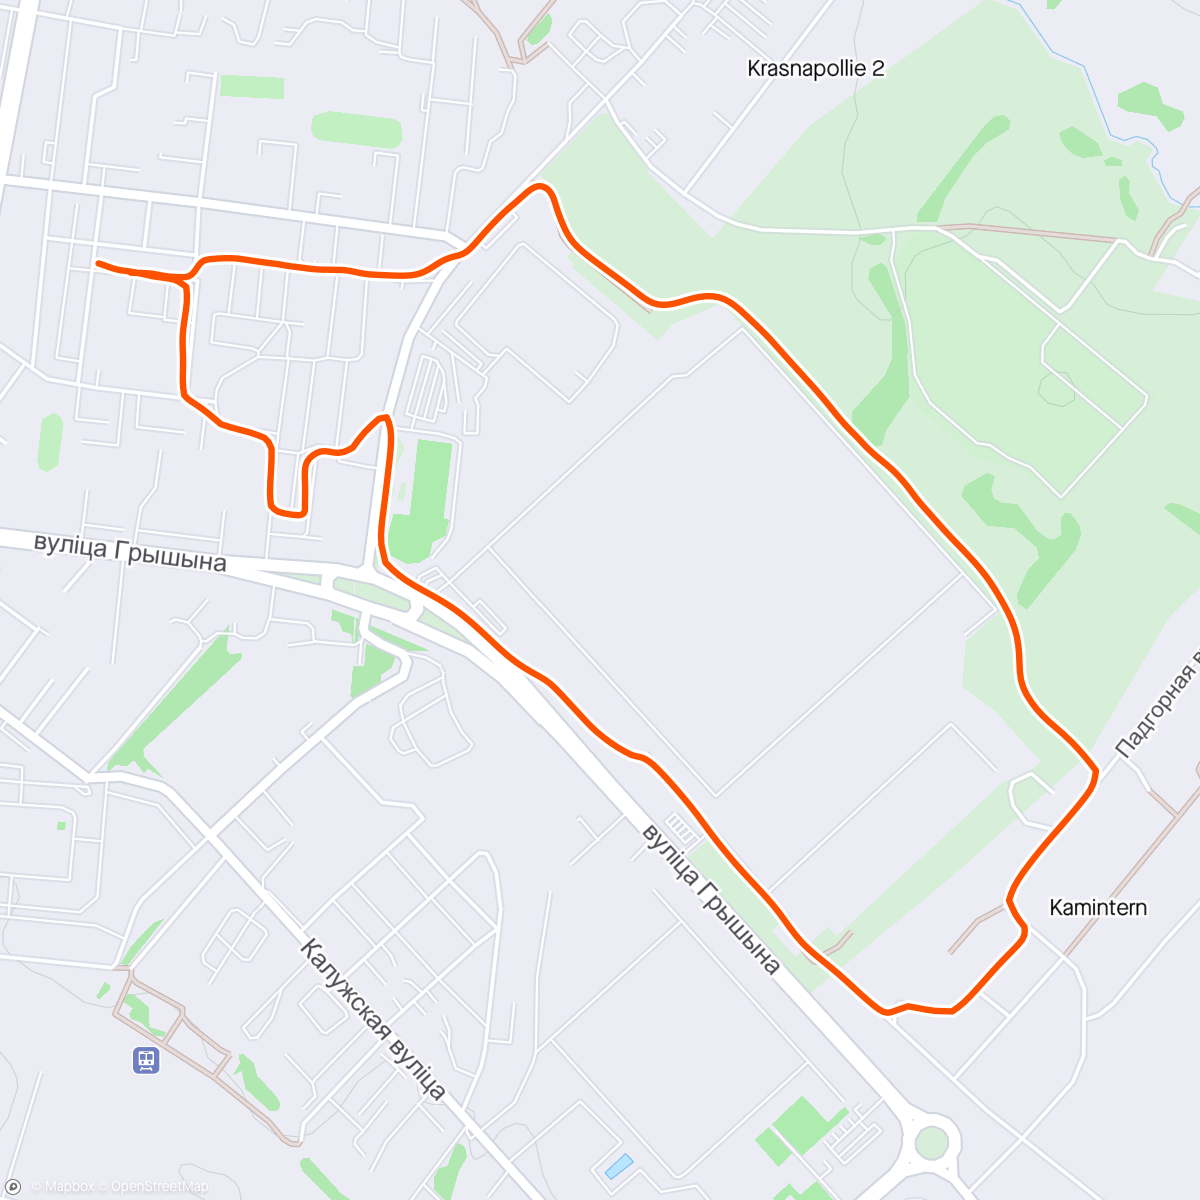 「Evening jogging」活動的地圖